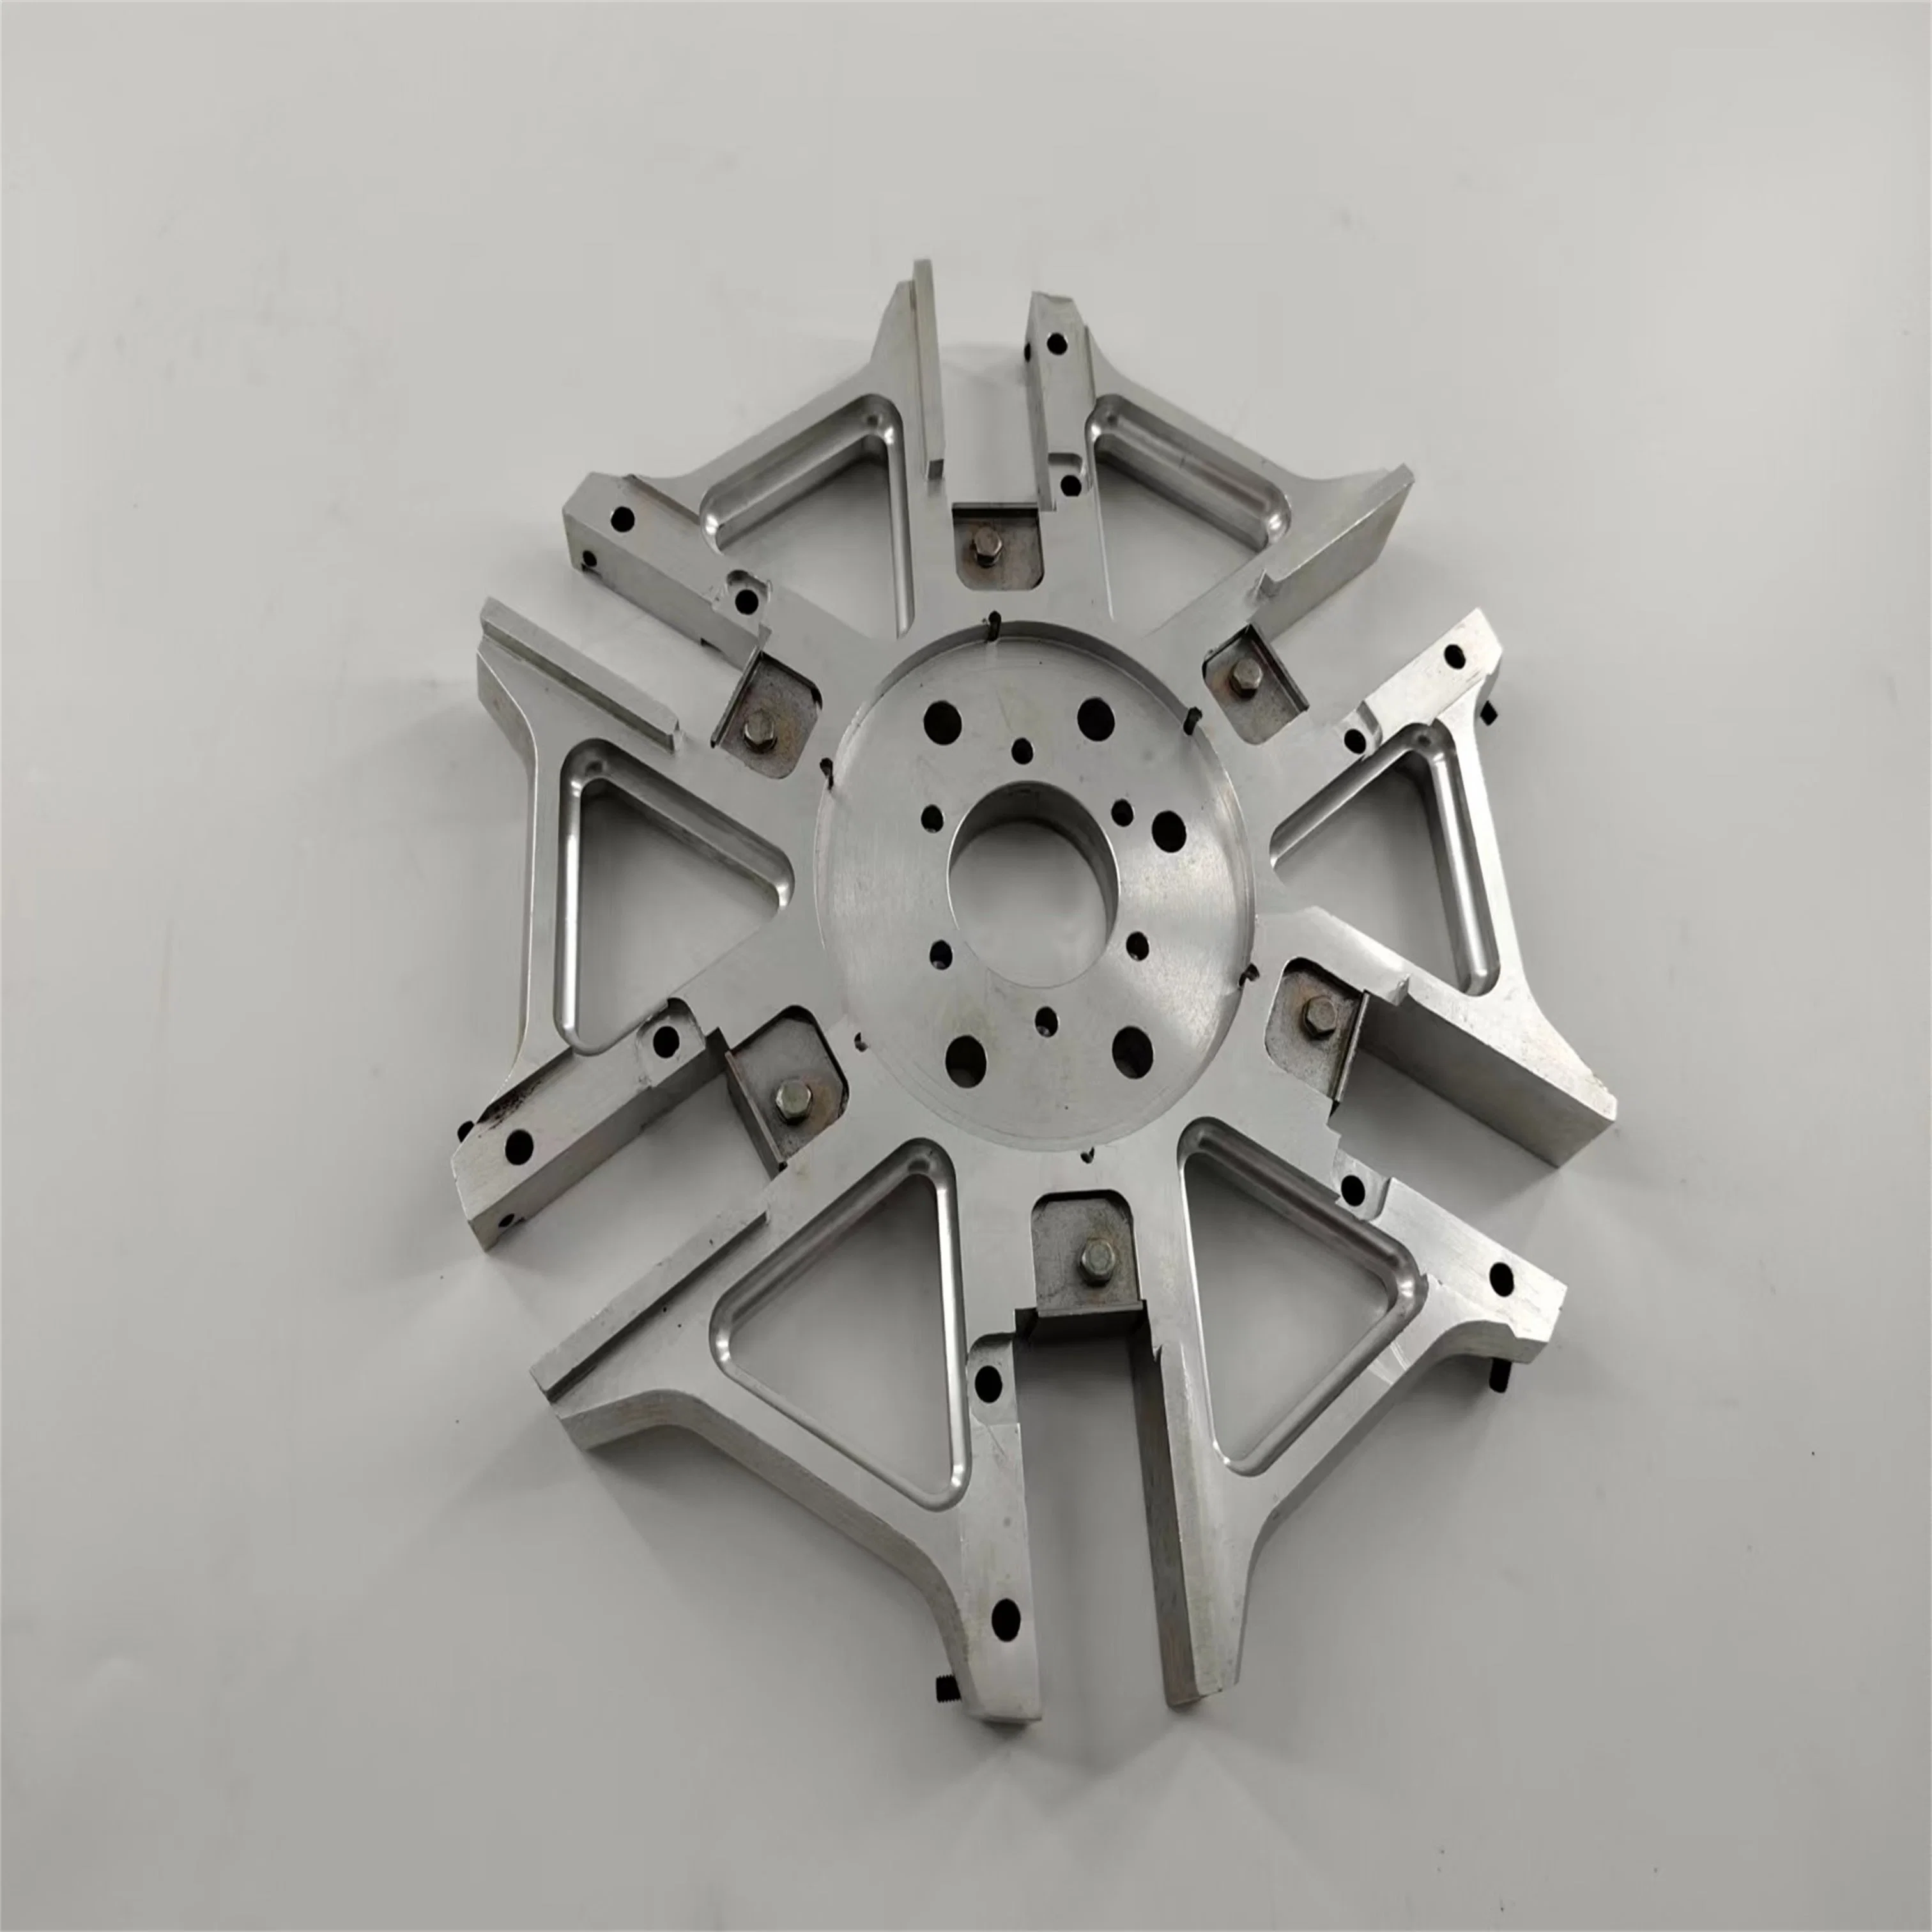 Benutzerdefinierte Aluminium Druckguss-Gehäuse / Zink-Legierung Guss für die Industrie Maschinen